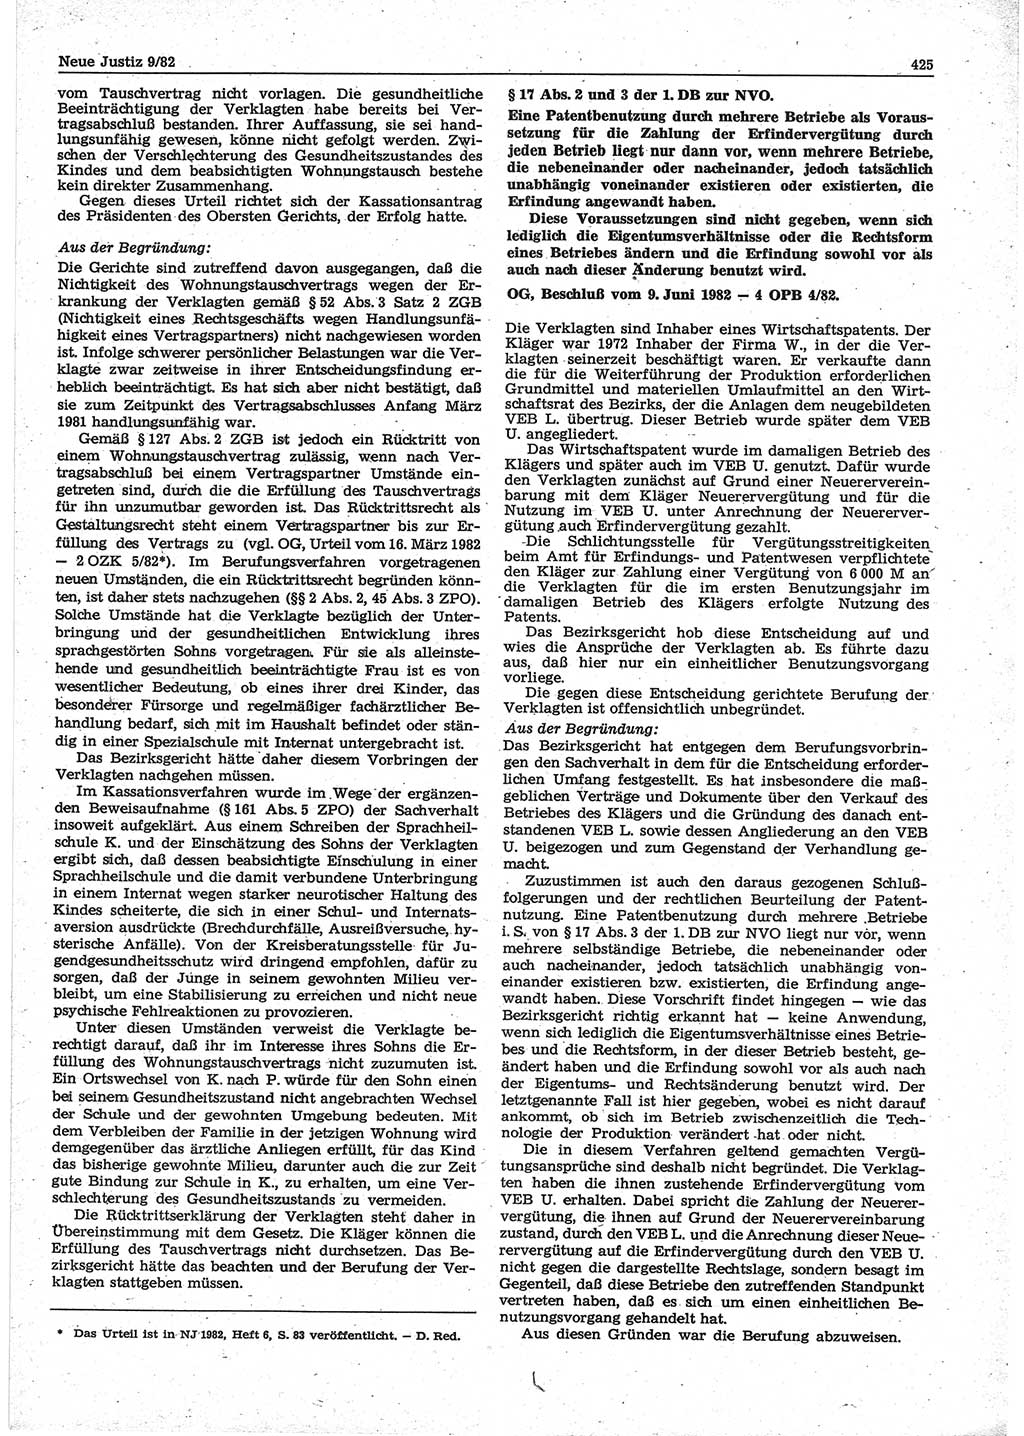 Neue Justiz (NJ), Zeitschrift für sozialistisches Recht und Gesetzlichkeit [Deutsche Demokratische Republik (DDR)], 36. Jahrgang 1982, Seite 425 (NJ DDR 1982, S. 425)